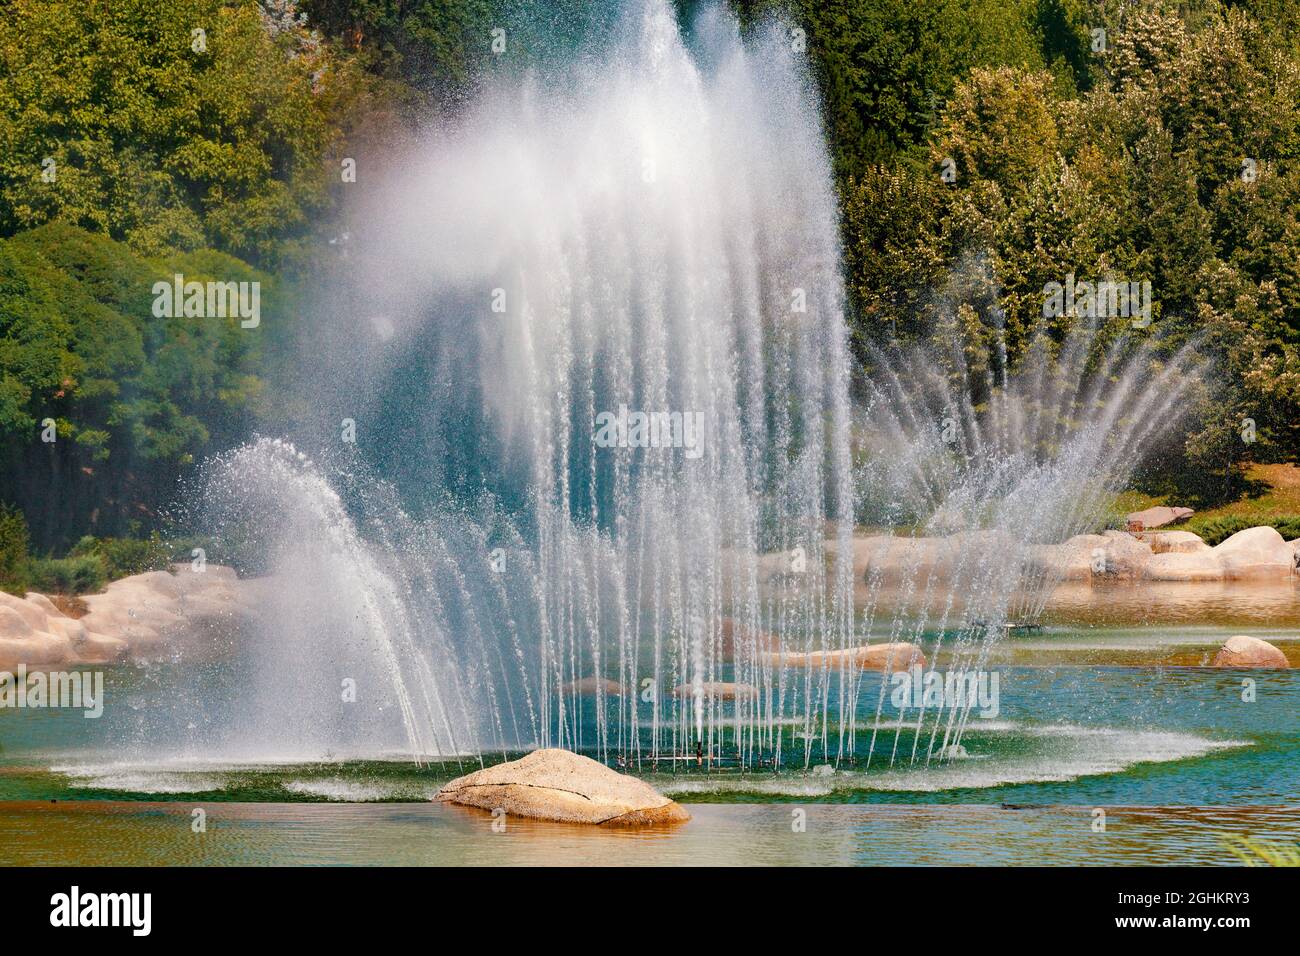 Im Dikmen Valley Park in Ankara spritzt ein großer Wasserbrunnen Wasser in die Luft. Bäume mit verschiedenen Grüntönen auf dem Hintergrund. Stockfoto